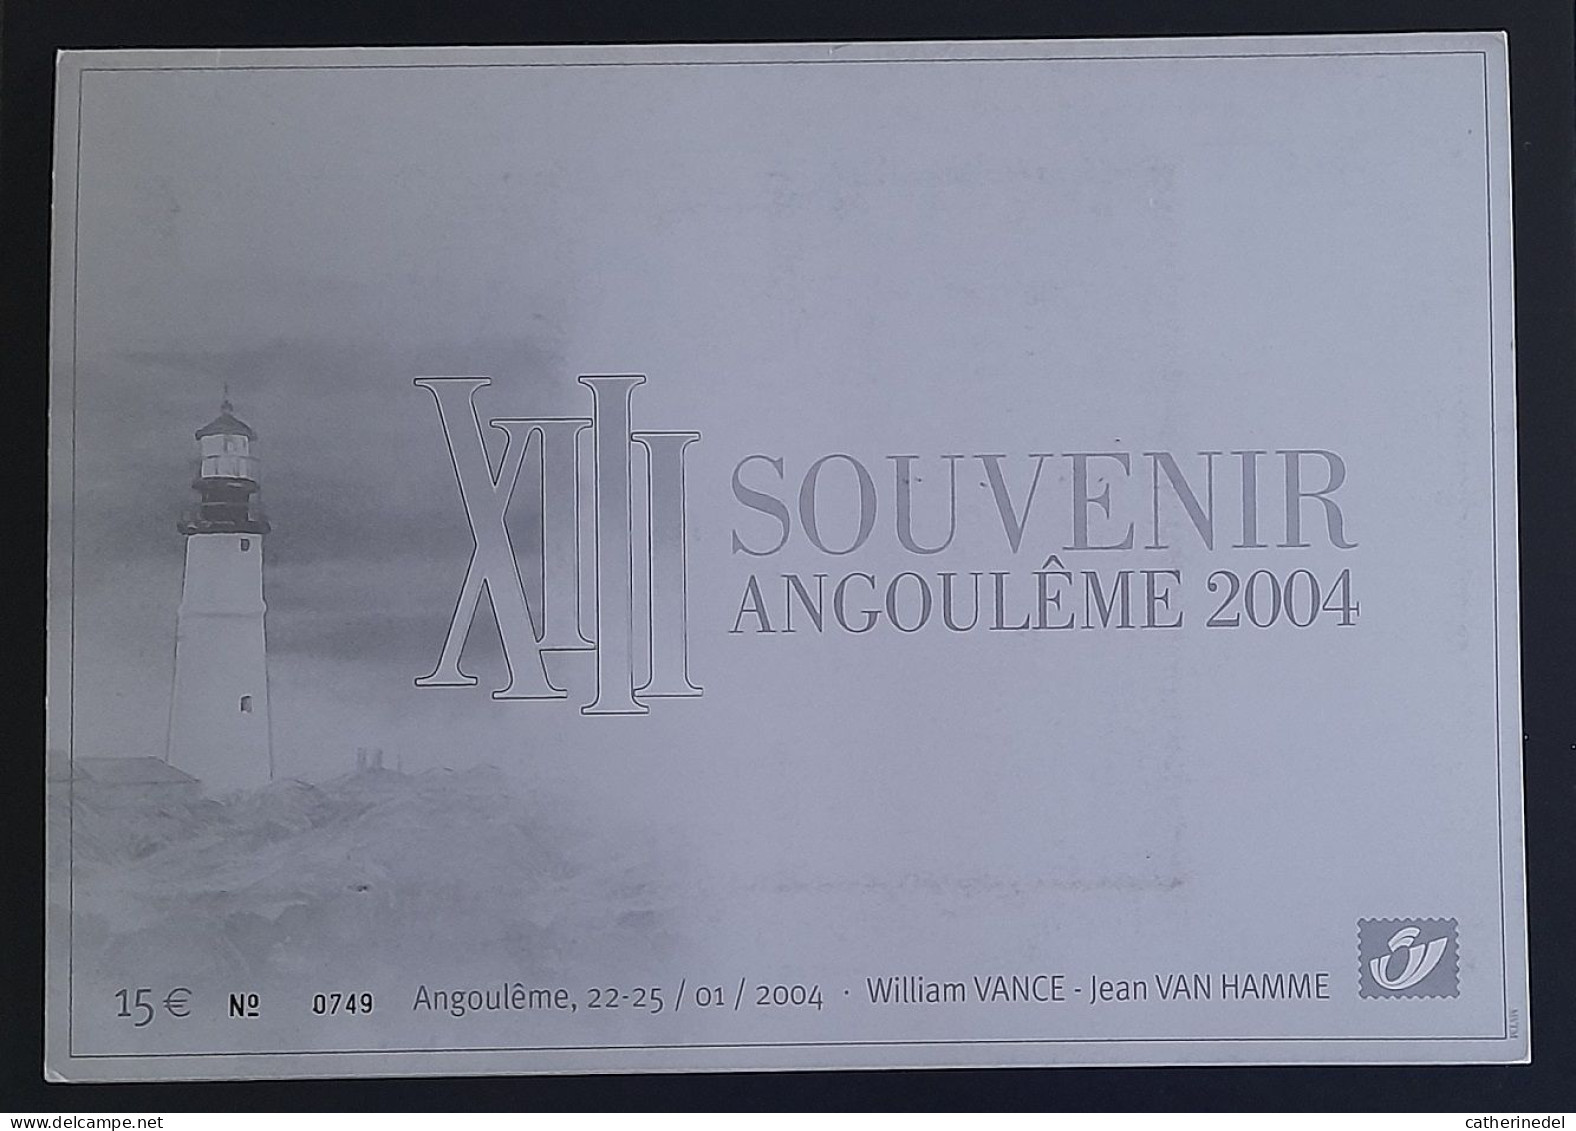 Année 2004 : 3233 - Pochette Souvenir Angoulème 2004 XIII - William VANCE - Jean VAN HAMME - Numérotée 0749 - Philabédés